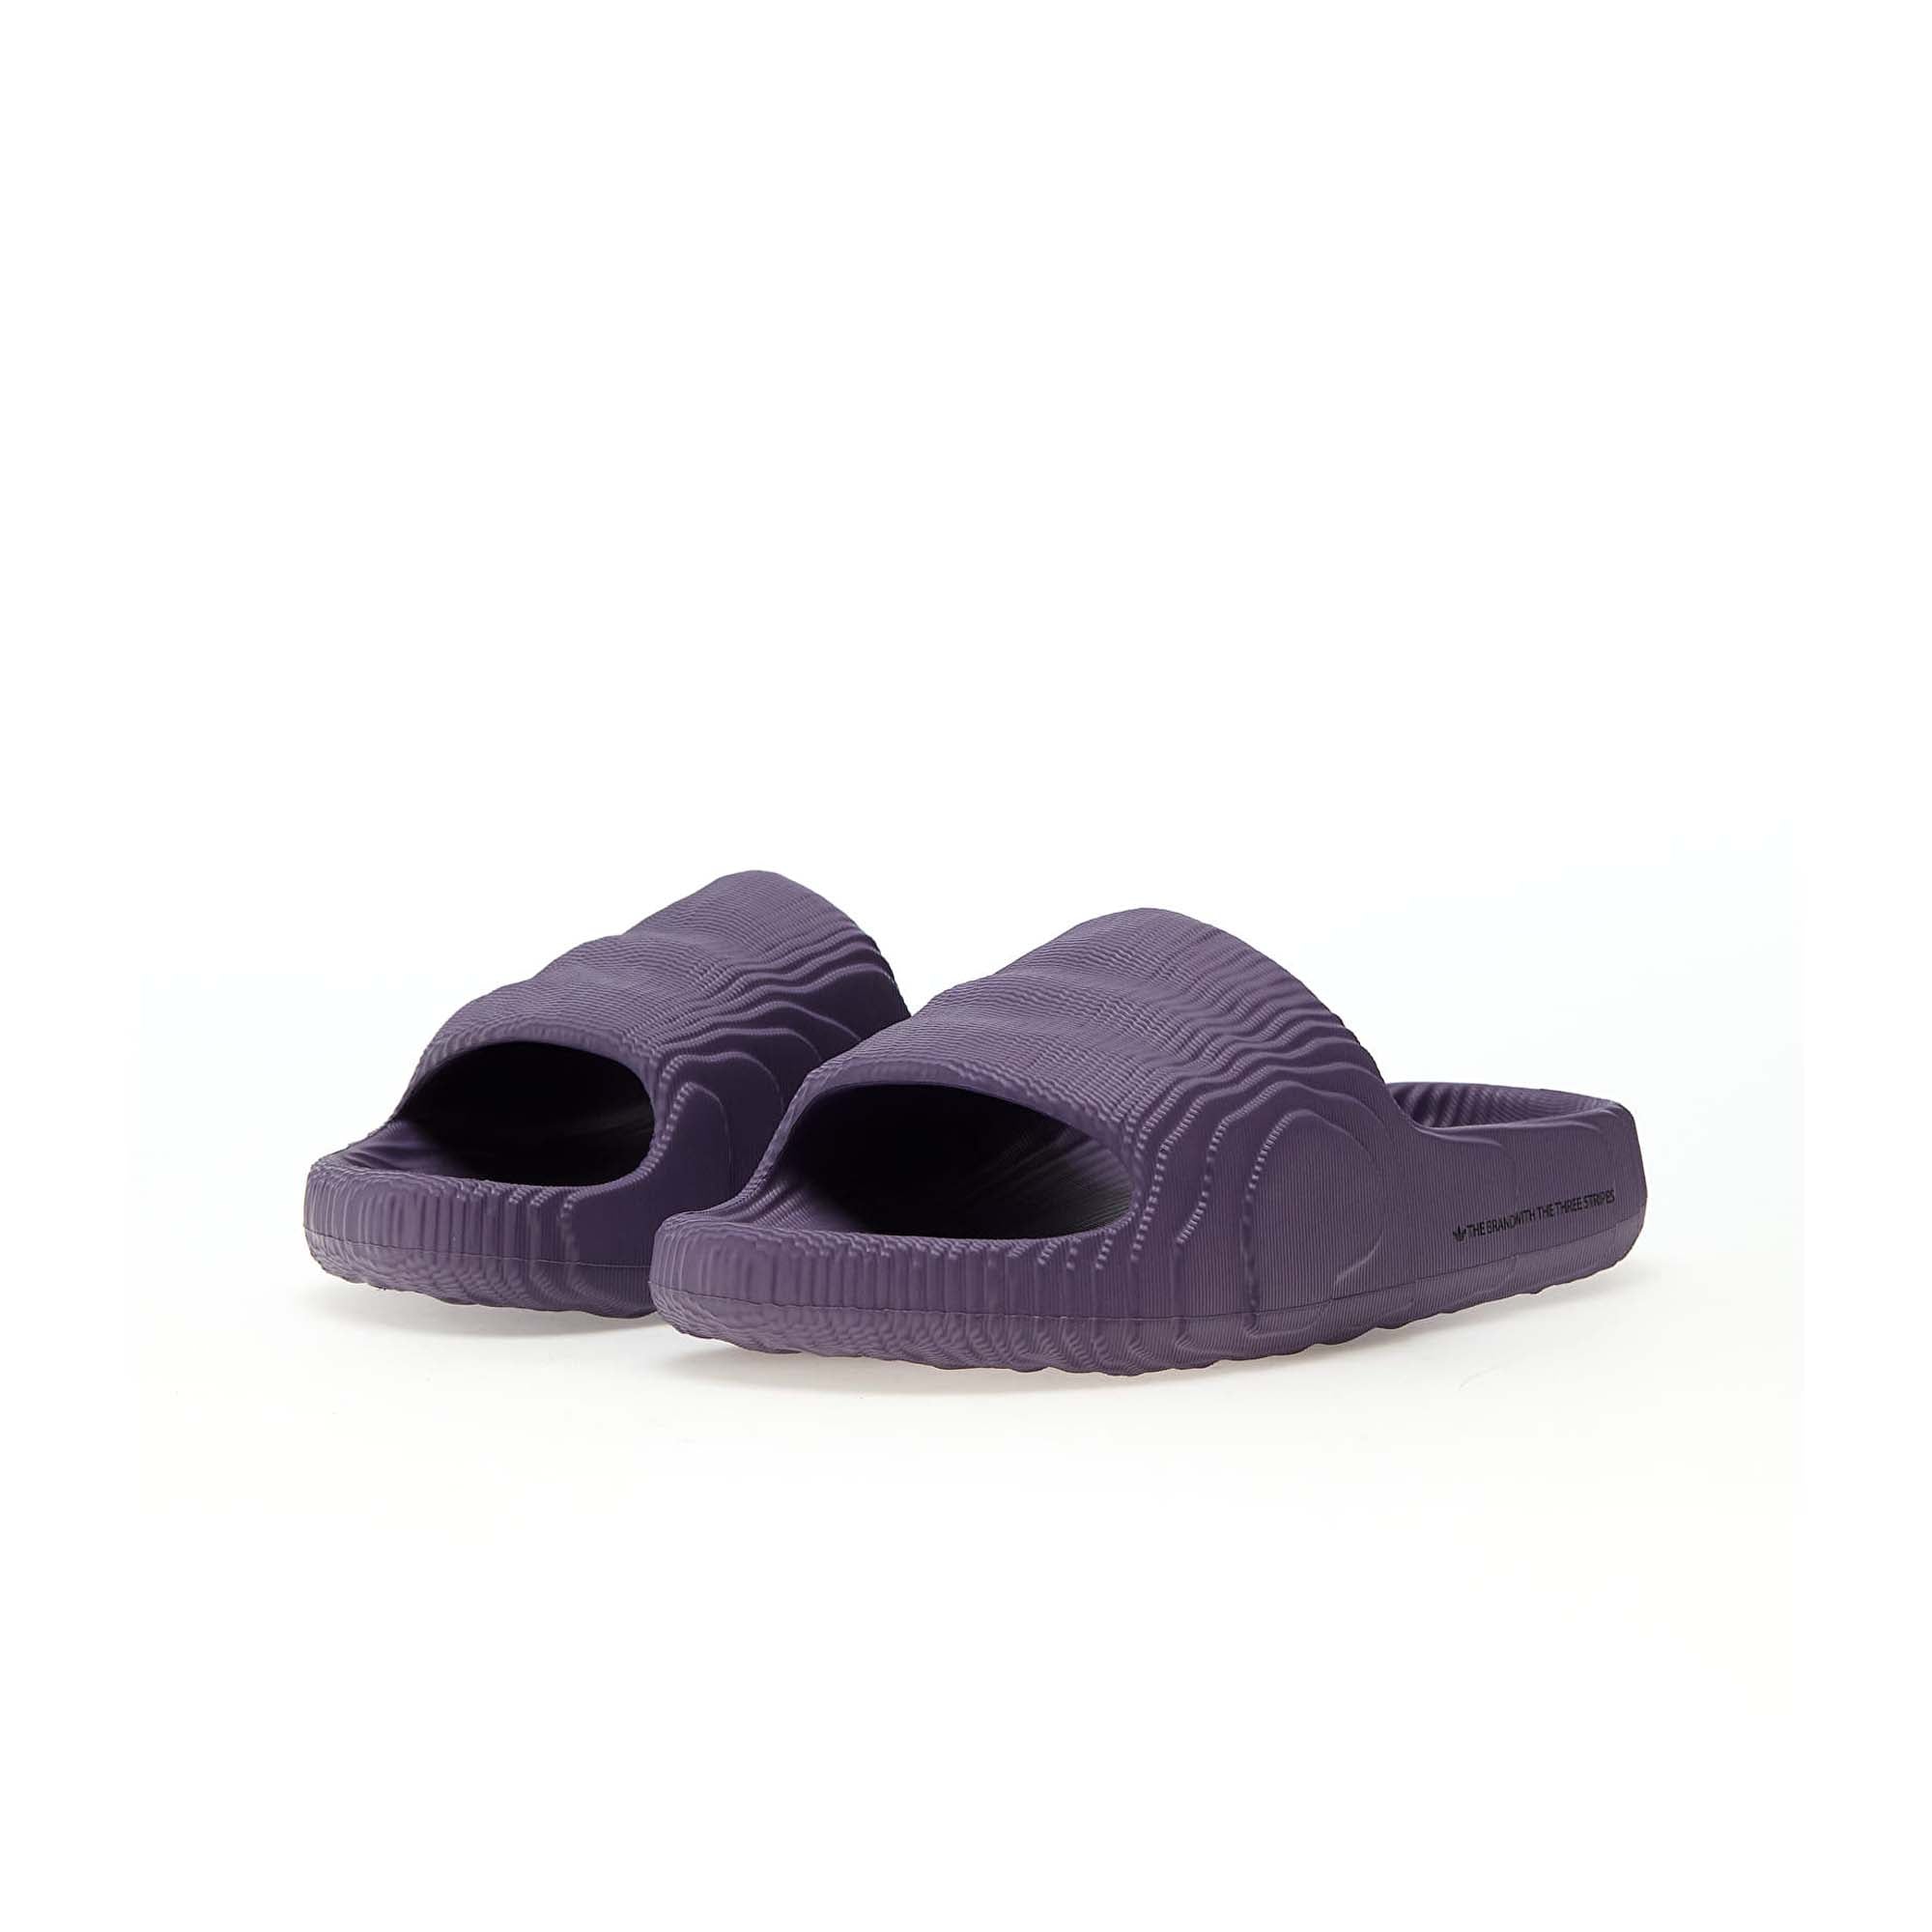 Buy Men Black Casual Slippers Online | SKU: 27-72069-11-10-Metro Shoes